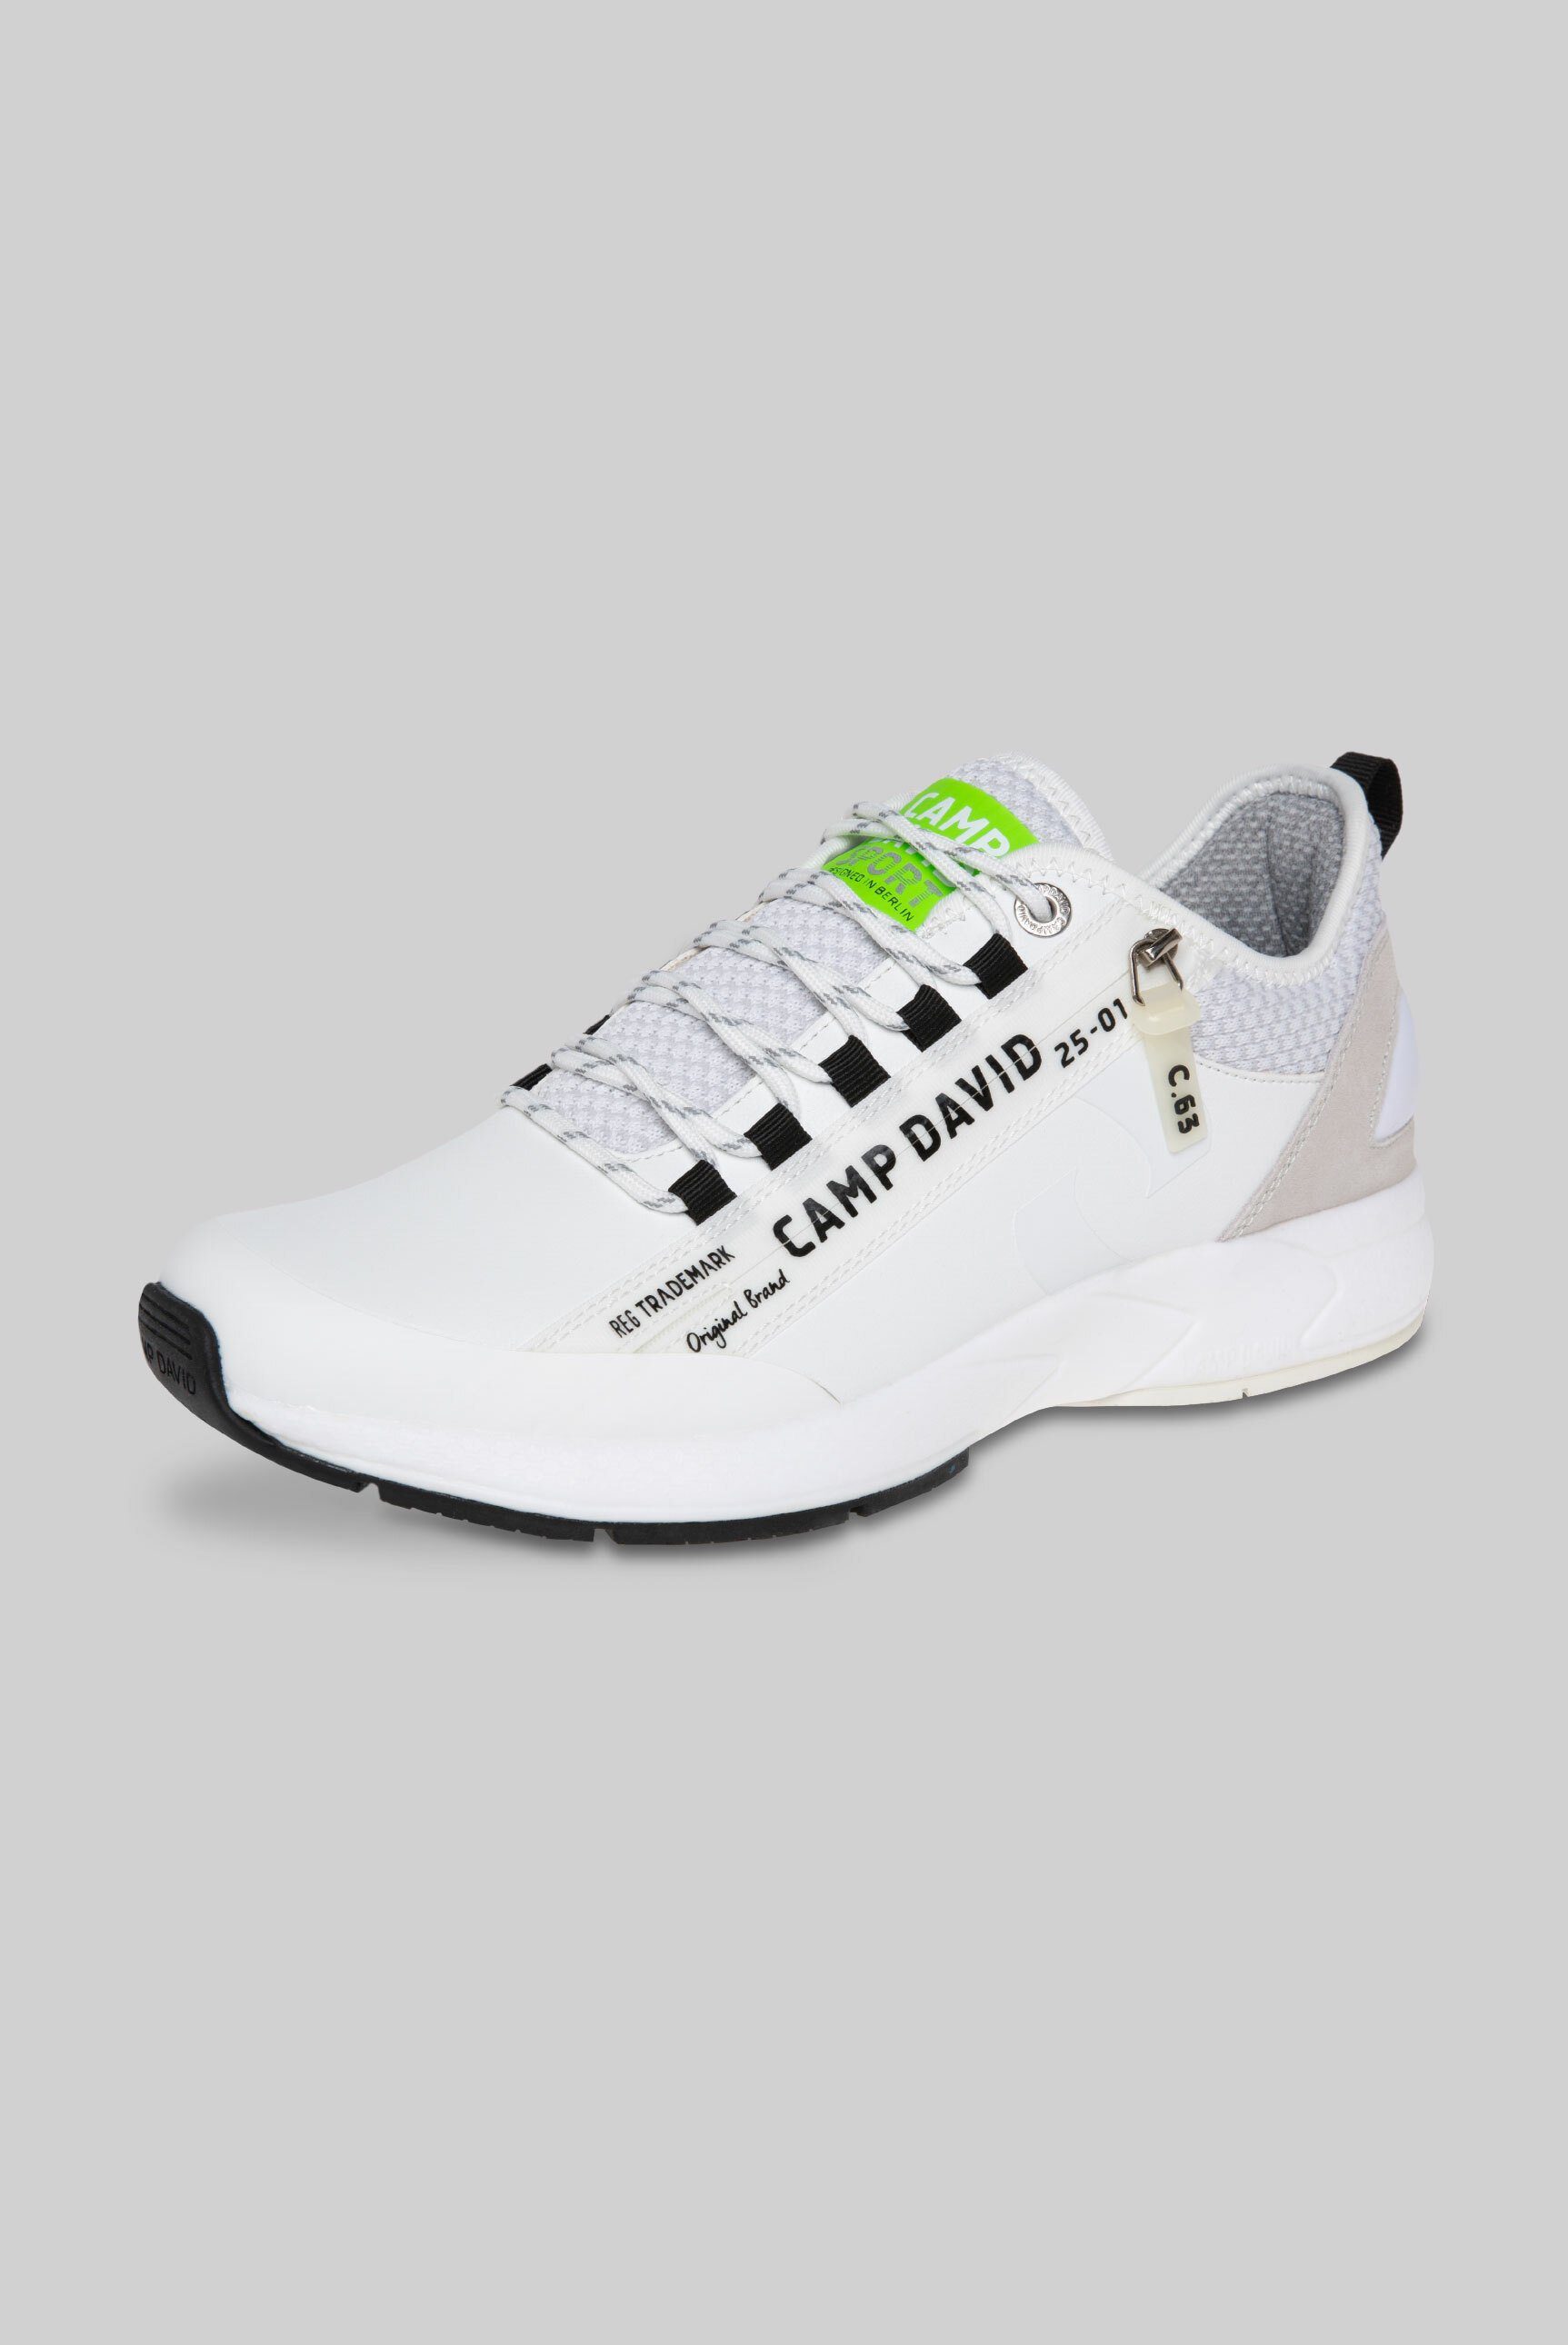 CAMP DAVID Sneaker mit Wechselfußbett online kaufen | OTTO